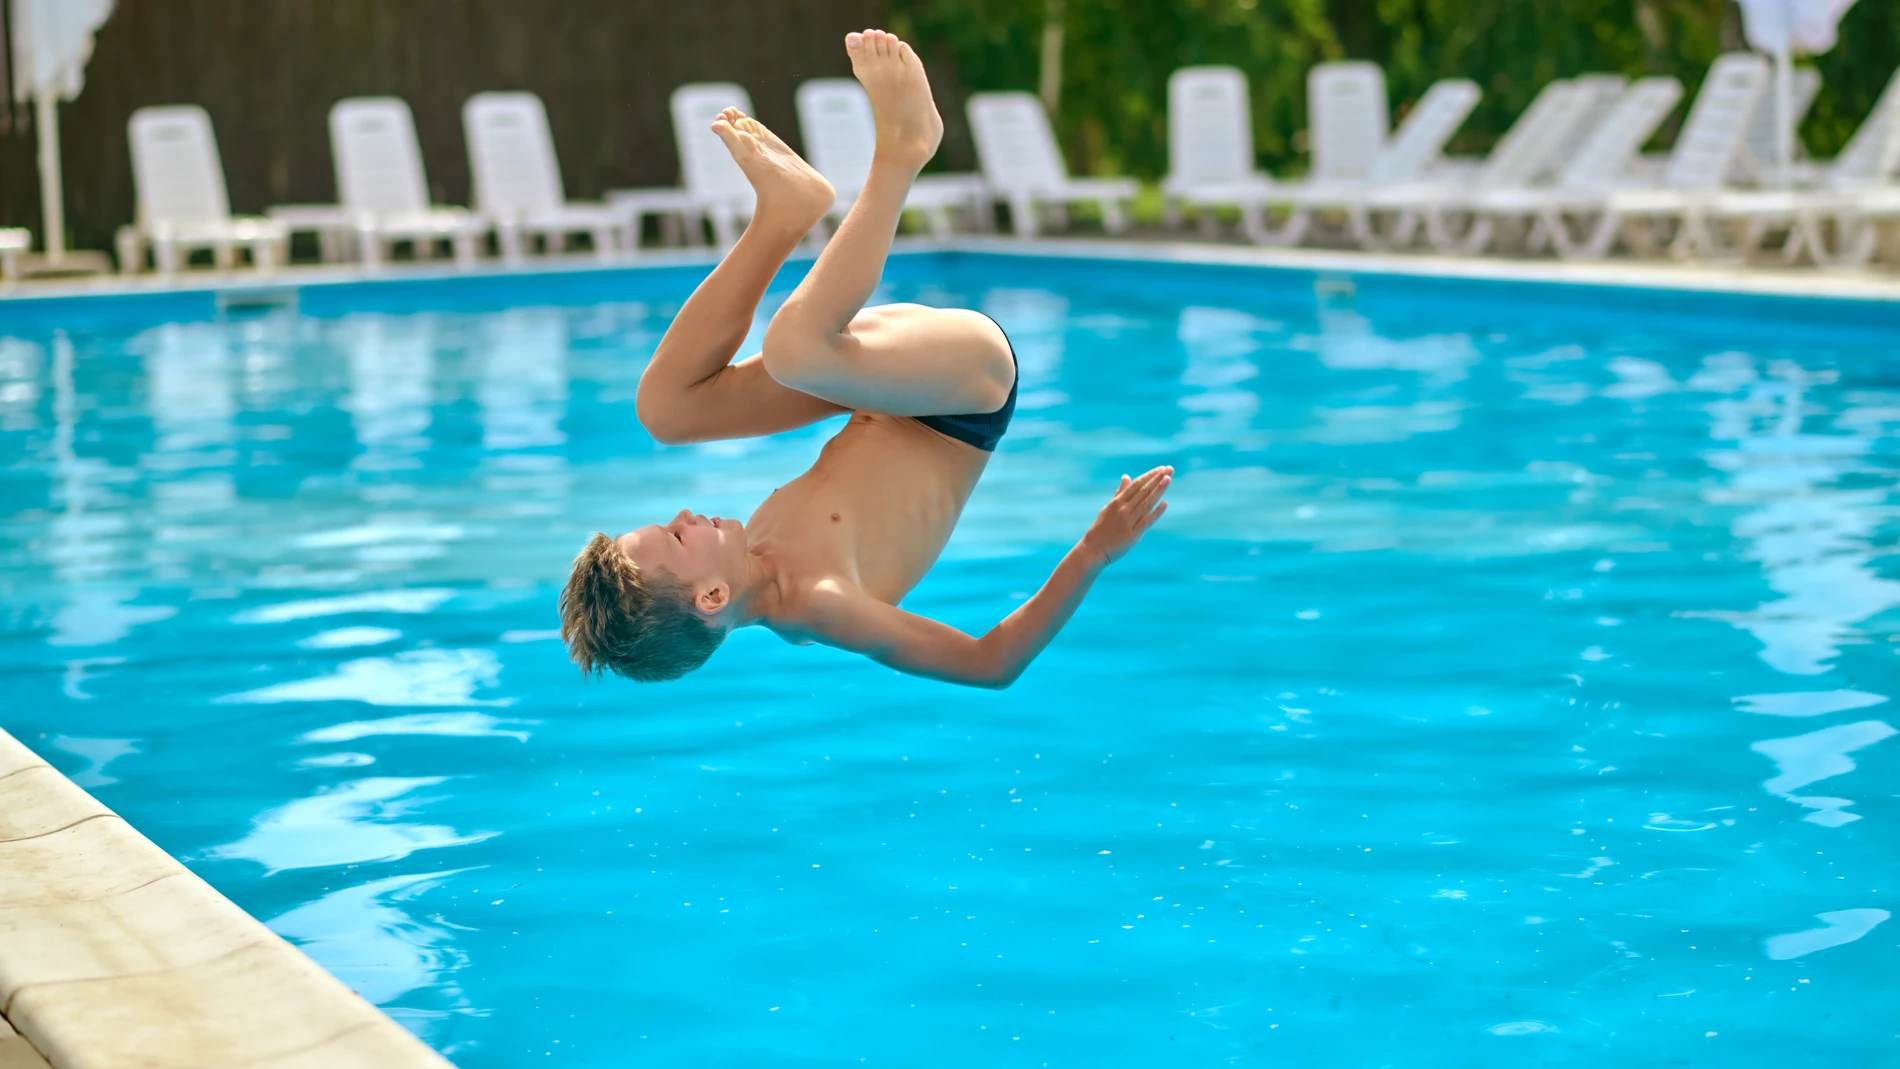 Cómo evitar ahogamientos y lesiones medulares por zambullidas, según los consejos de los expertos